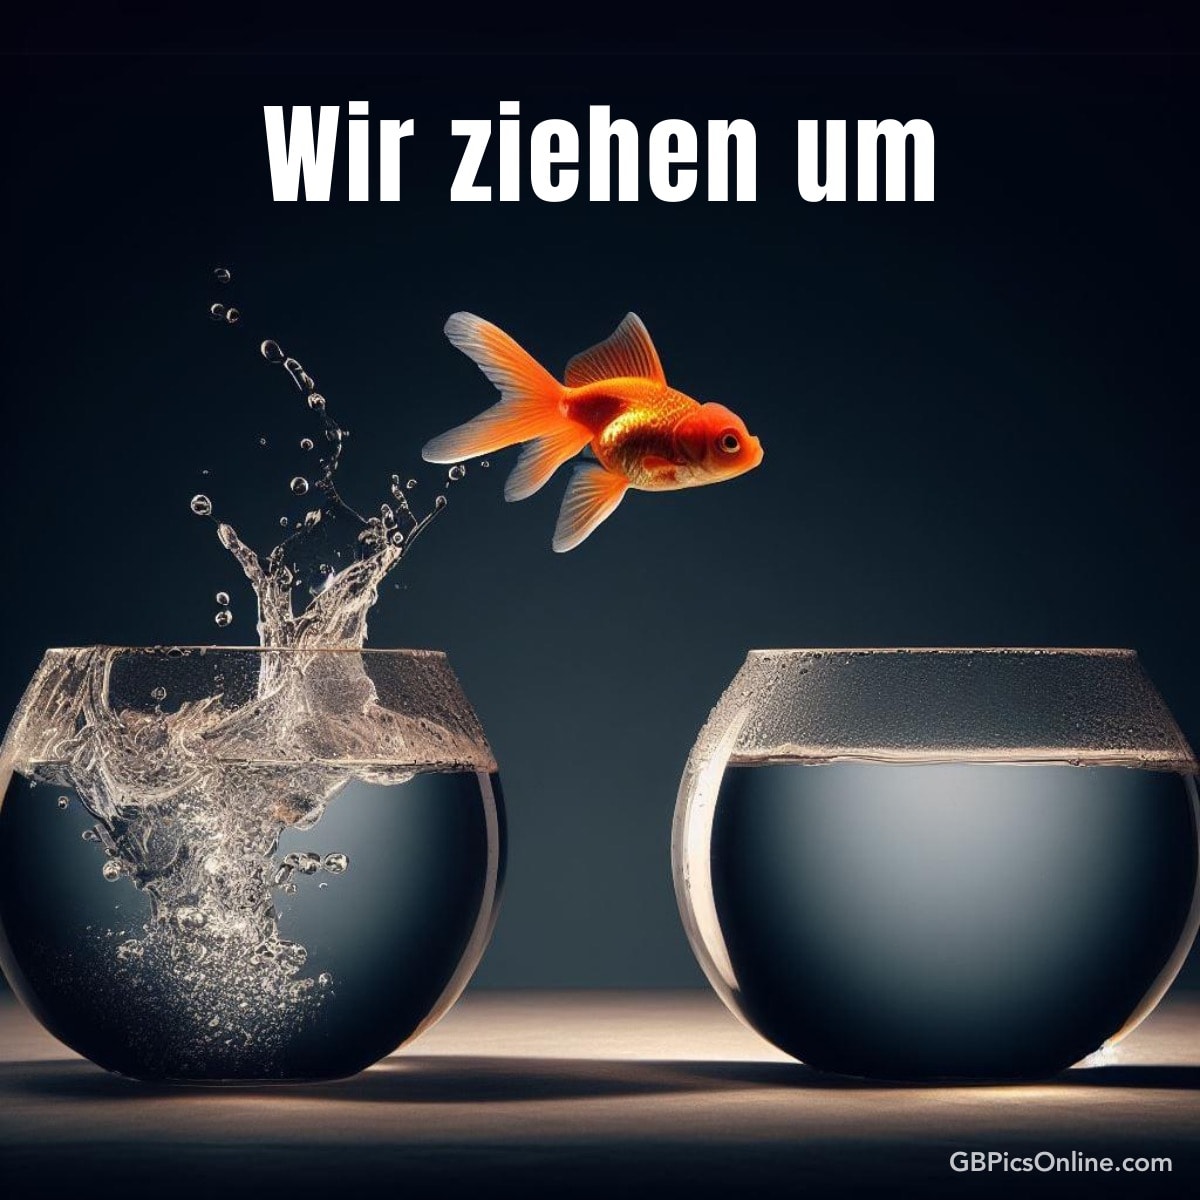 Ein Goldfisch springt von einem Glas voller Wasser zu einem anderen, mit dem Text „Wir ziehen um“ oben